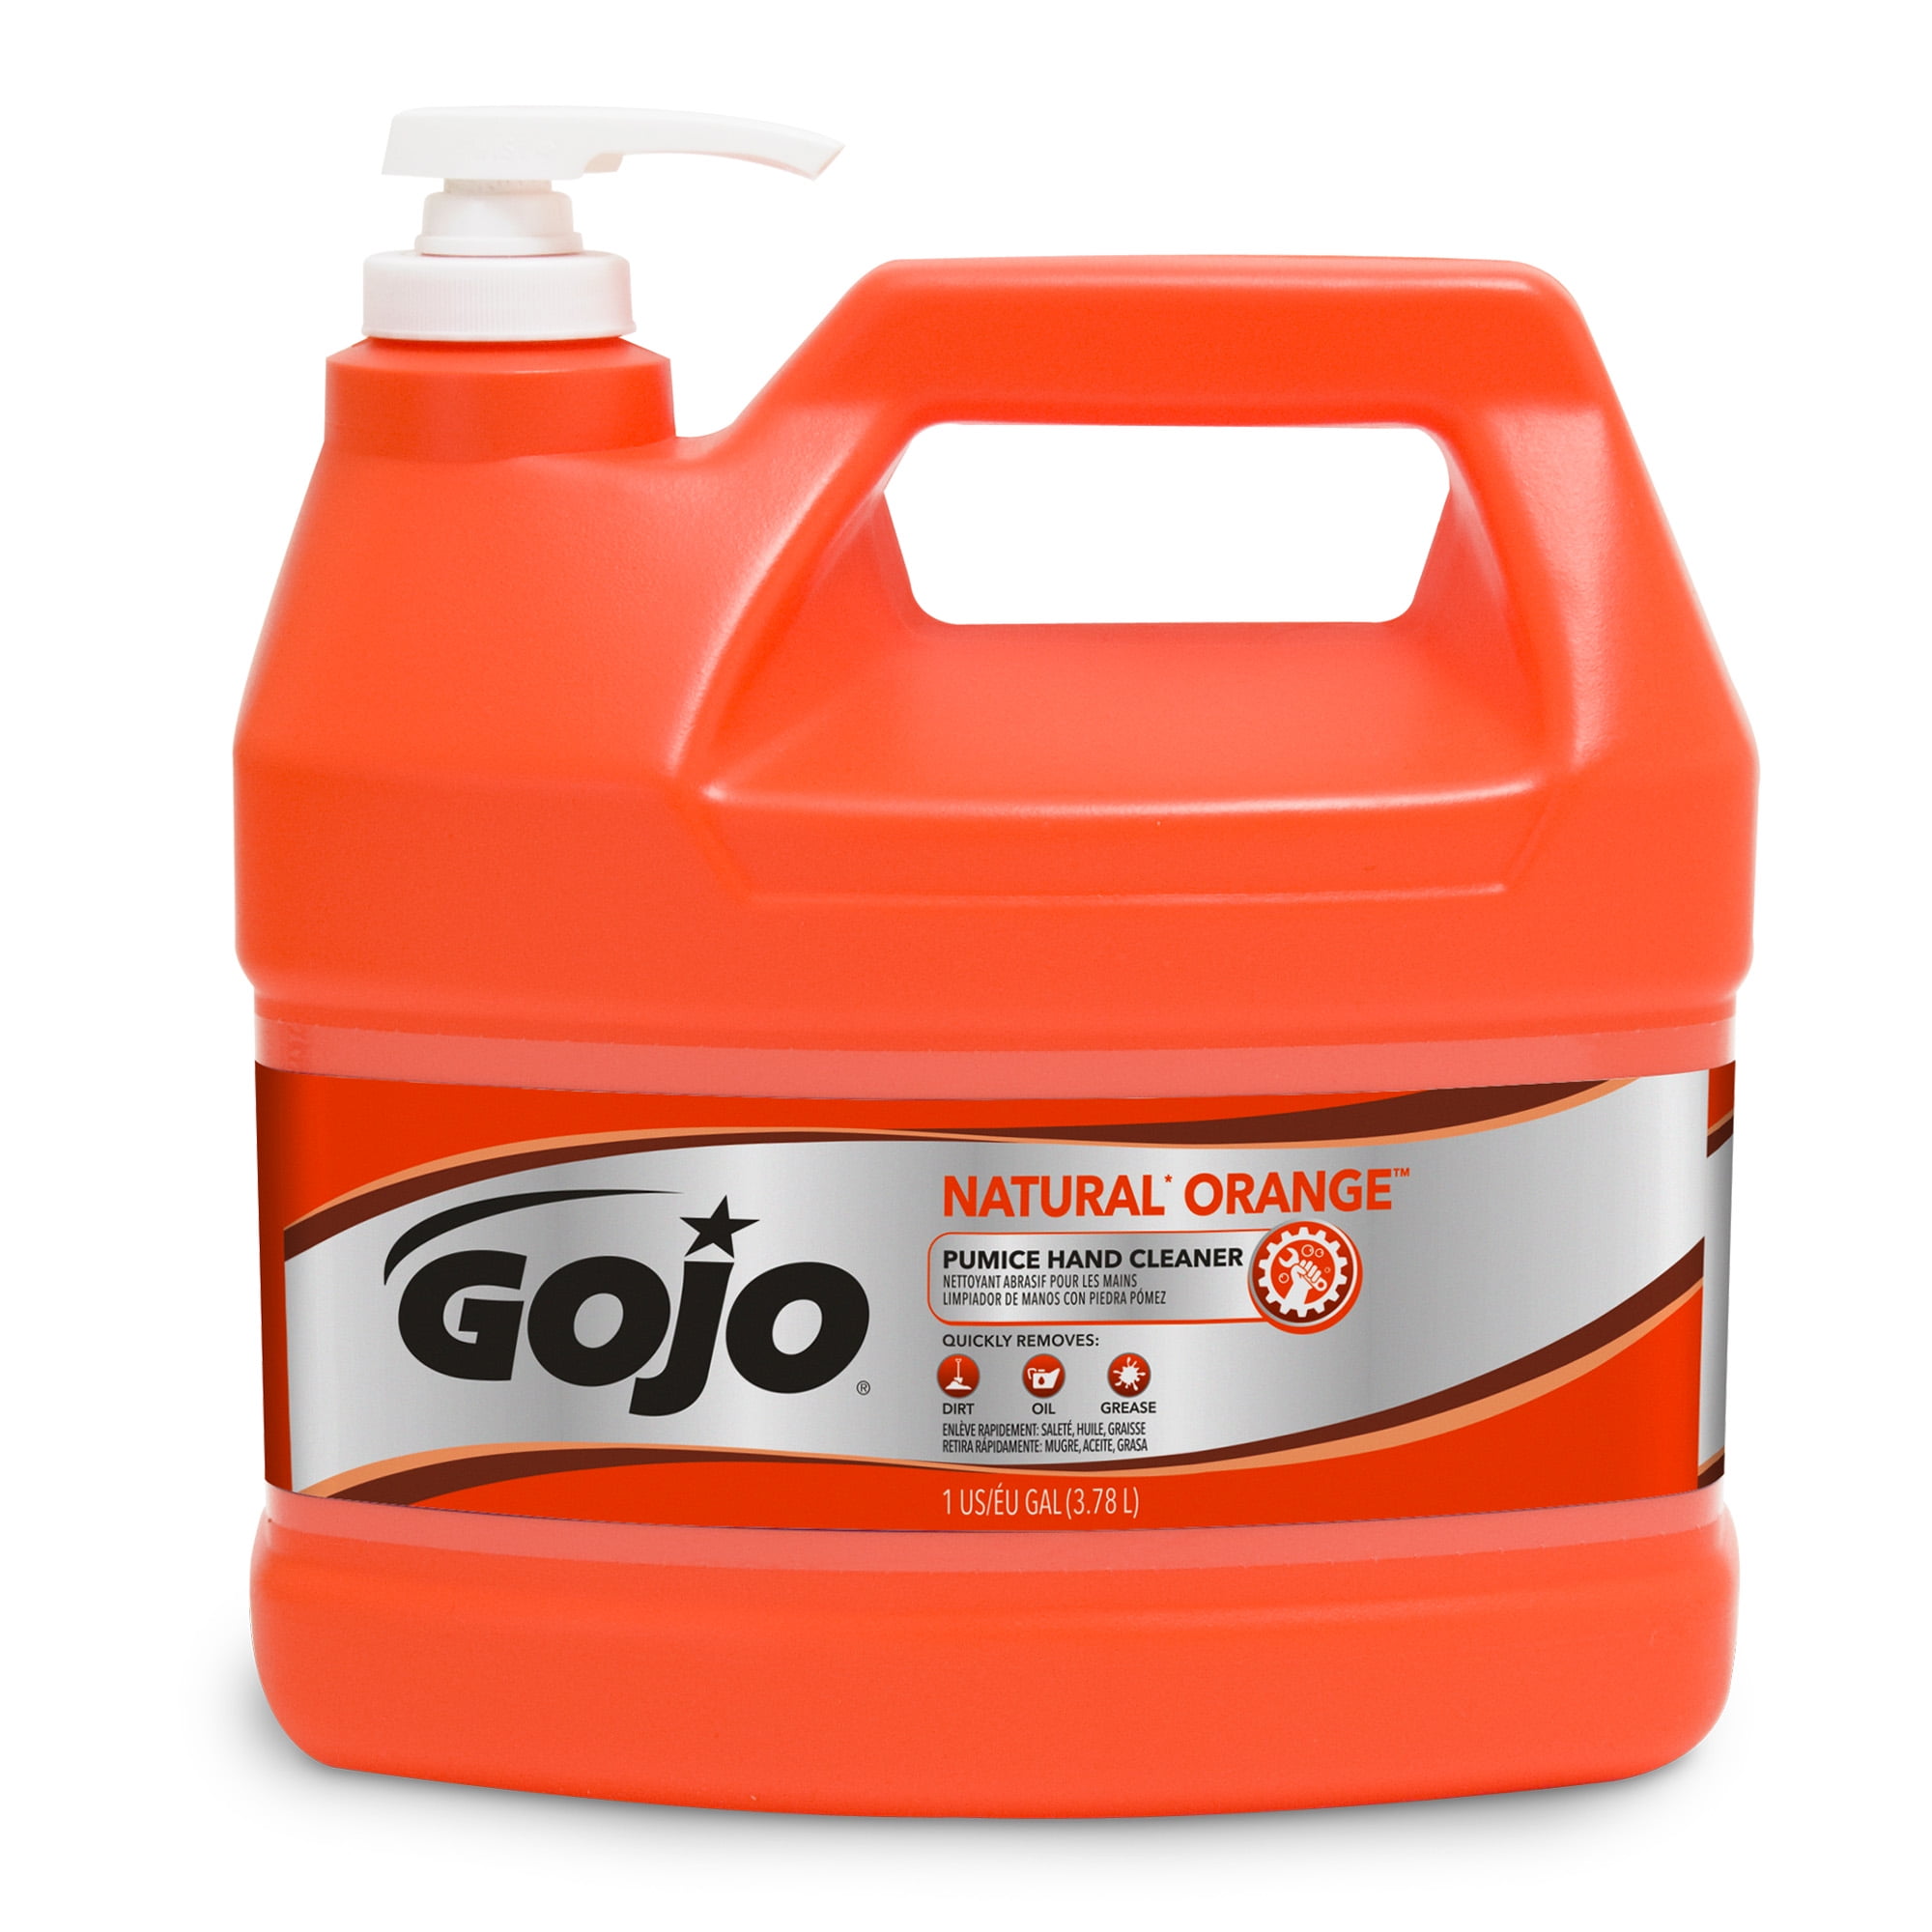 Fast Orange, Micro Gel Pumice Hand Cleaner, 15 oz Permatex - 25122 